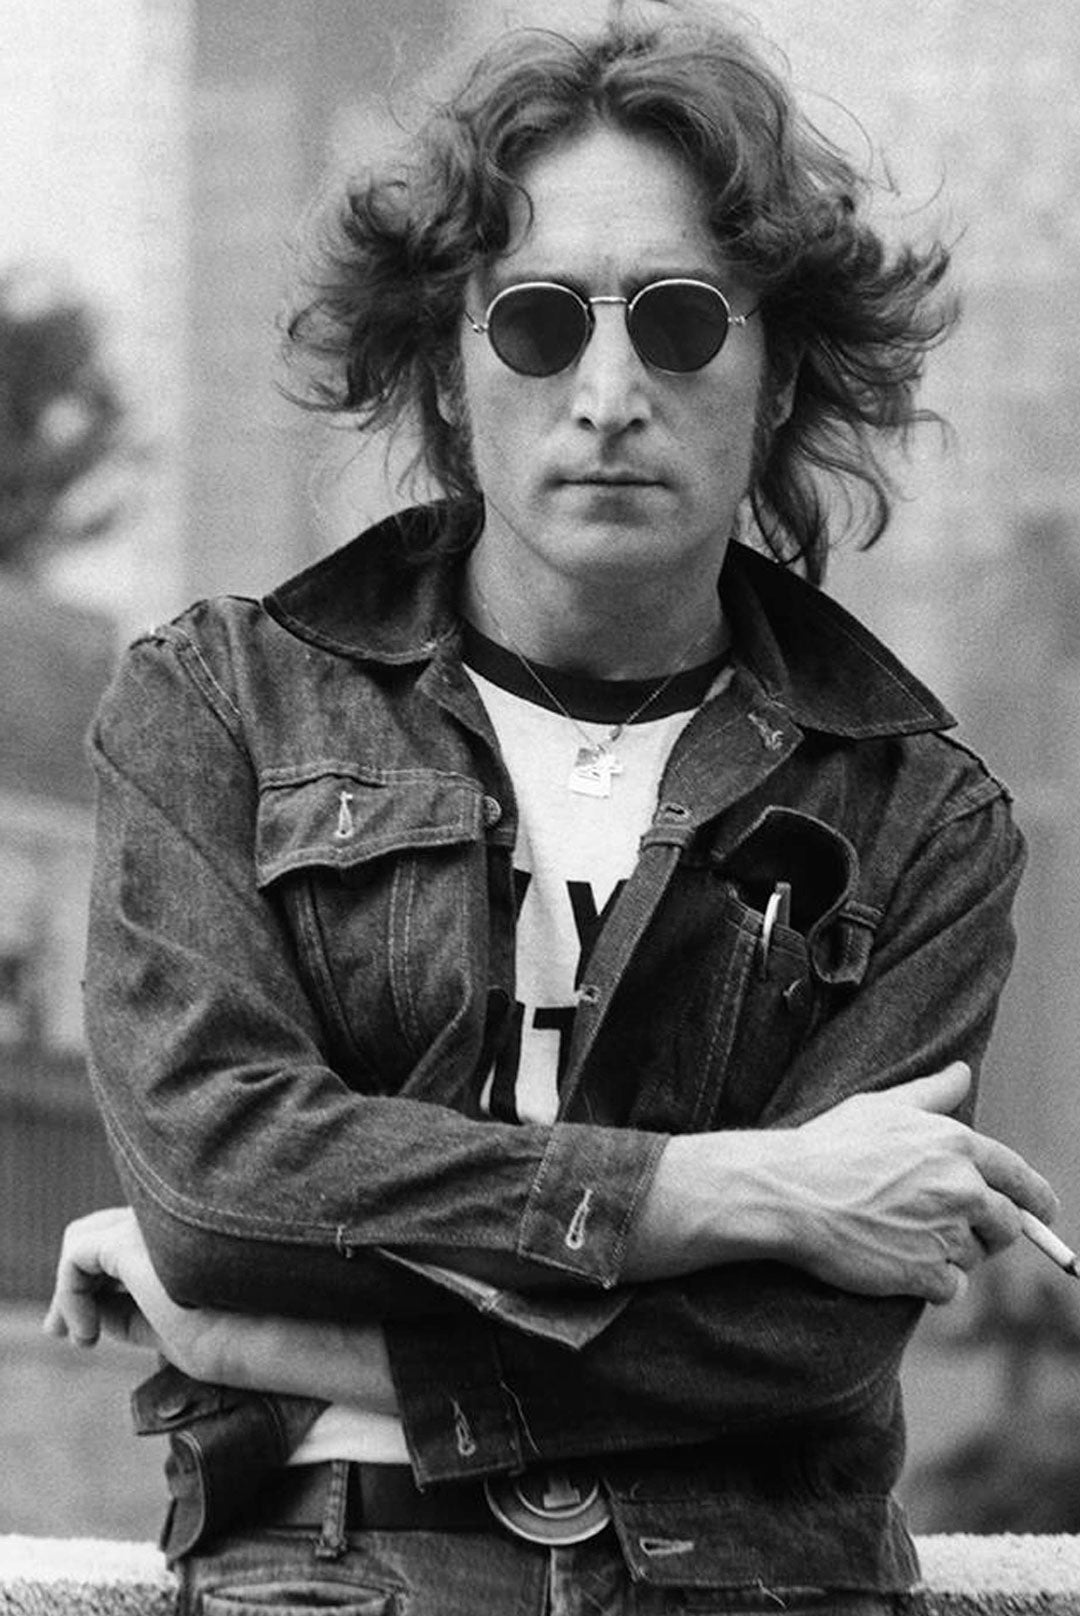 John Lennon Inspired Round Sunglasses - Style #6028